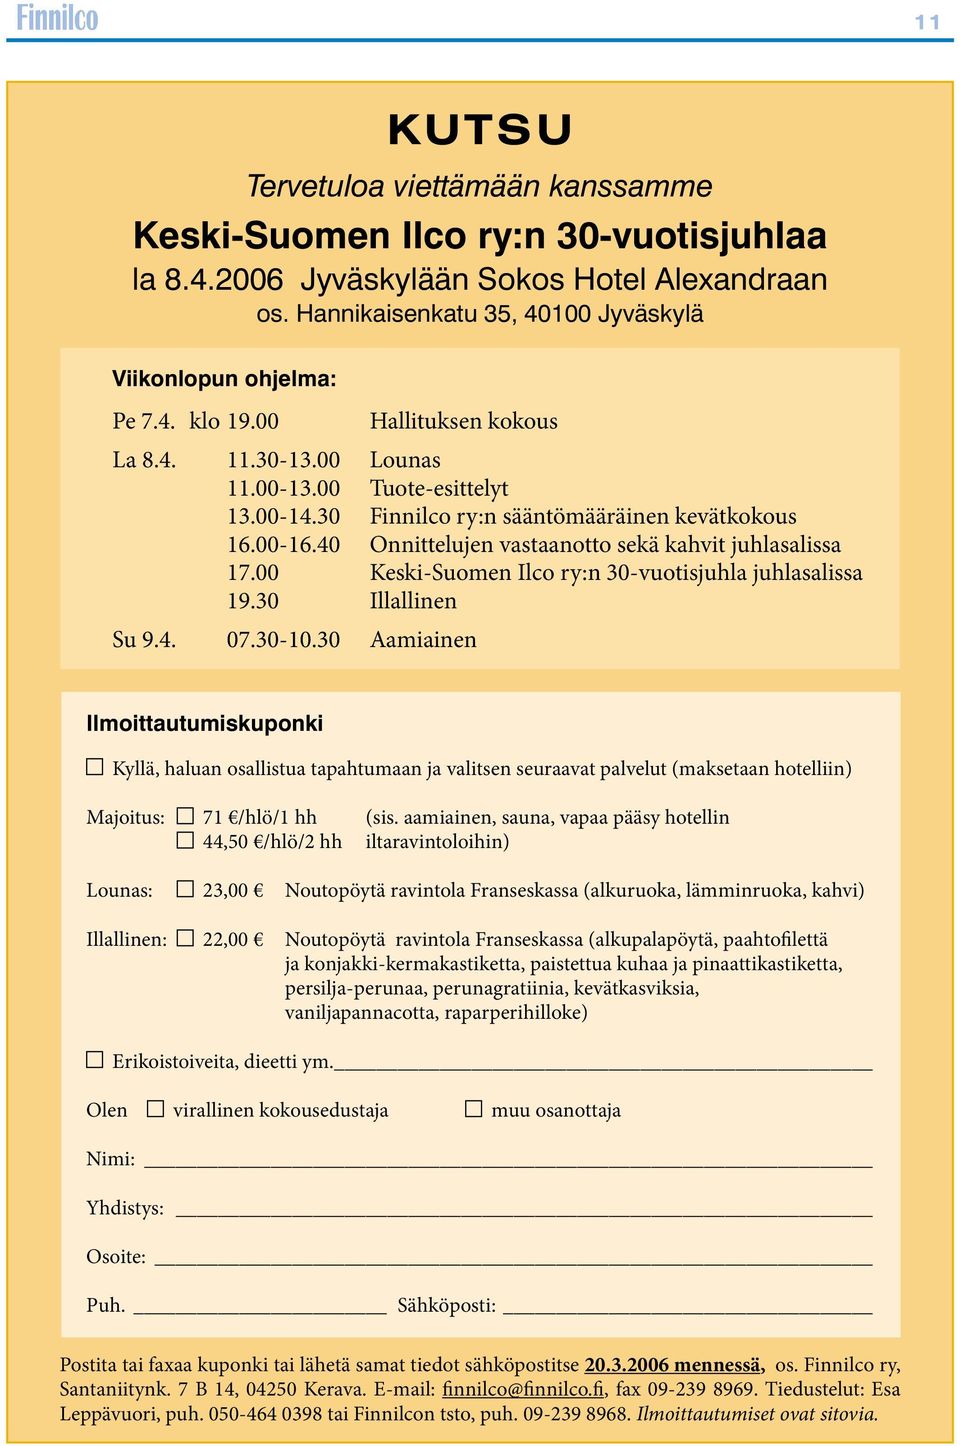 00 Keski-Suomen Ilco ry:n 30-vuotisjuhla juhlasalissa 19.30 Illallinen Su 9.4. 07.30-10.